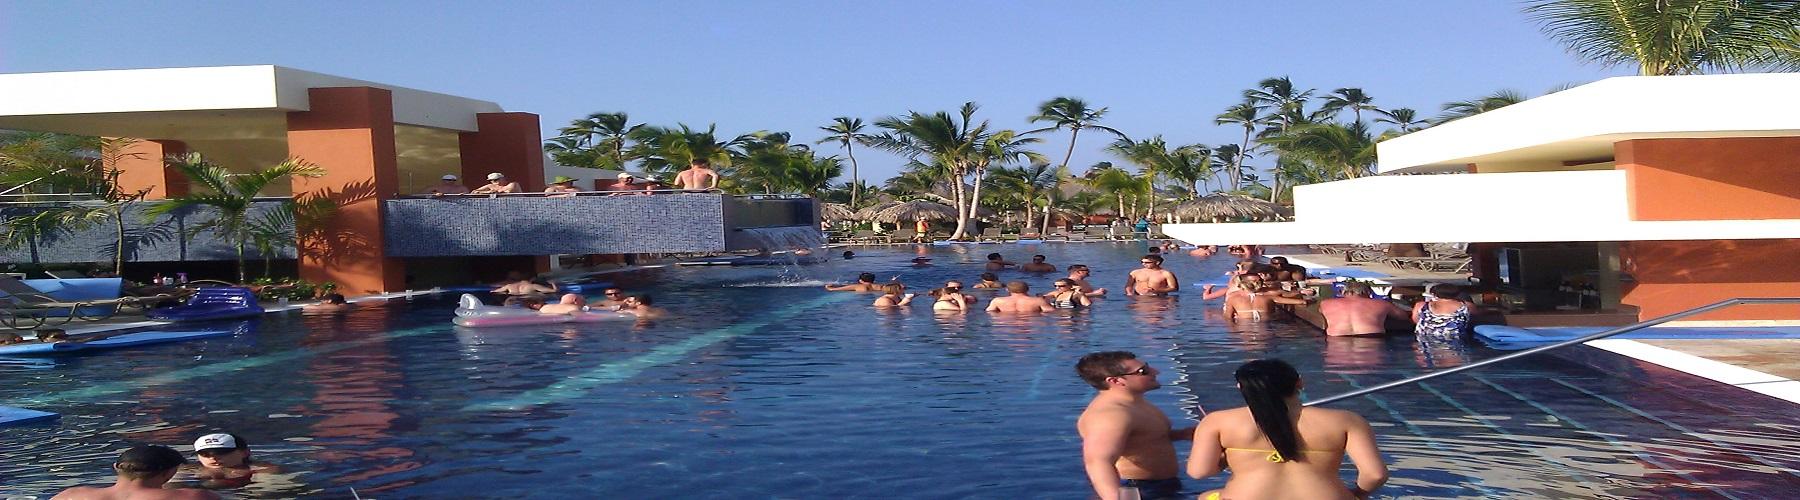 Забронировать отель Breathless Punta Cana Resort and Spa 5*